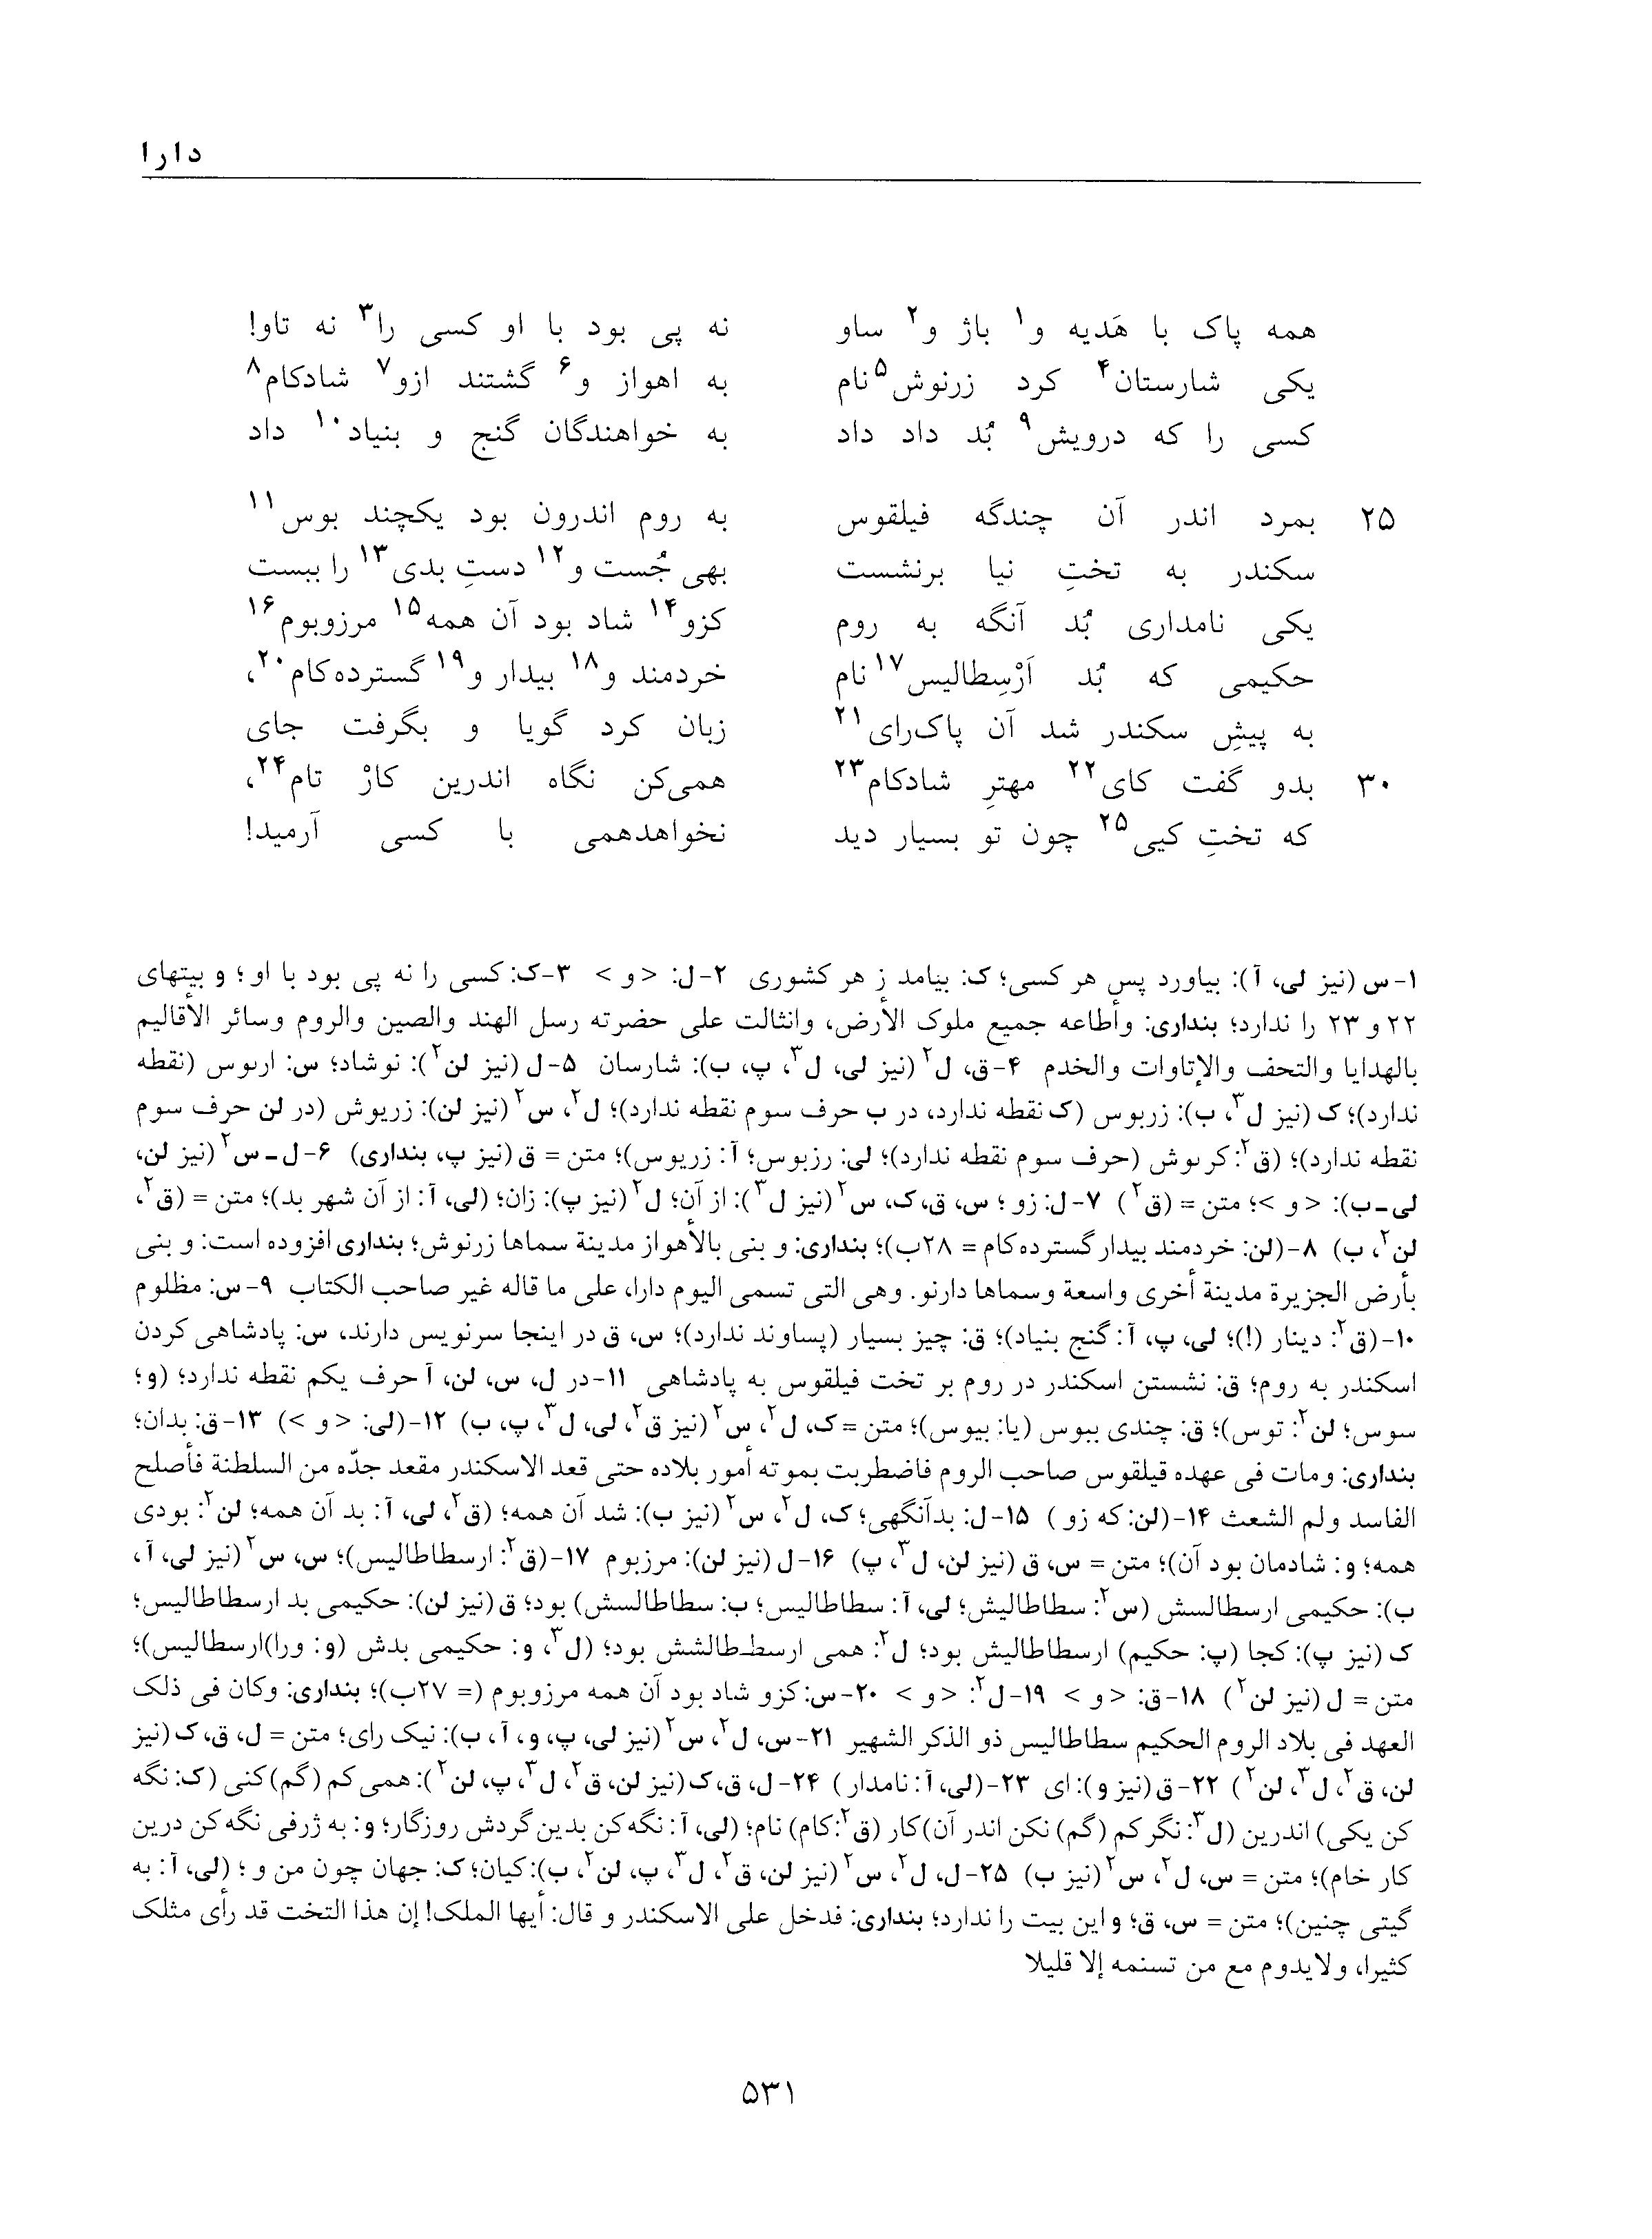 vol. 5, p. 531